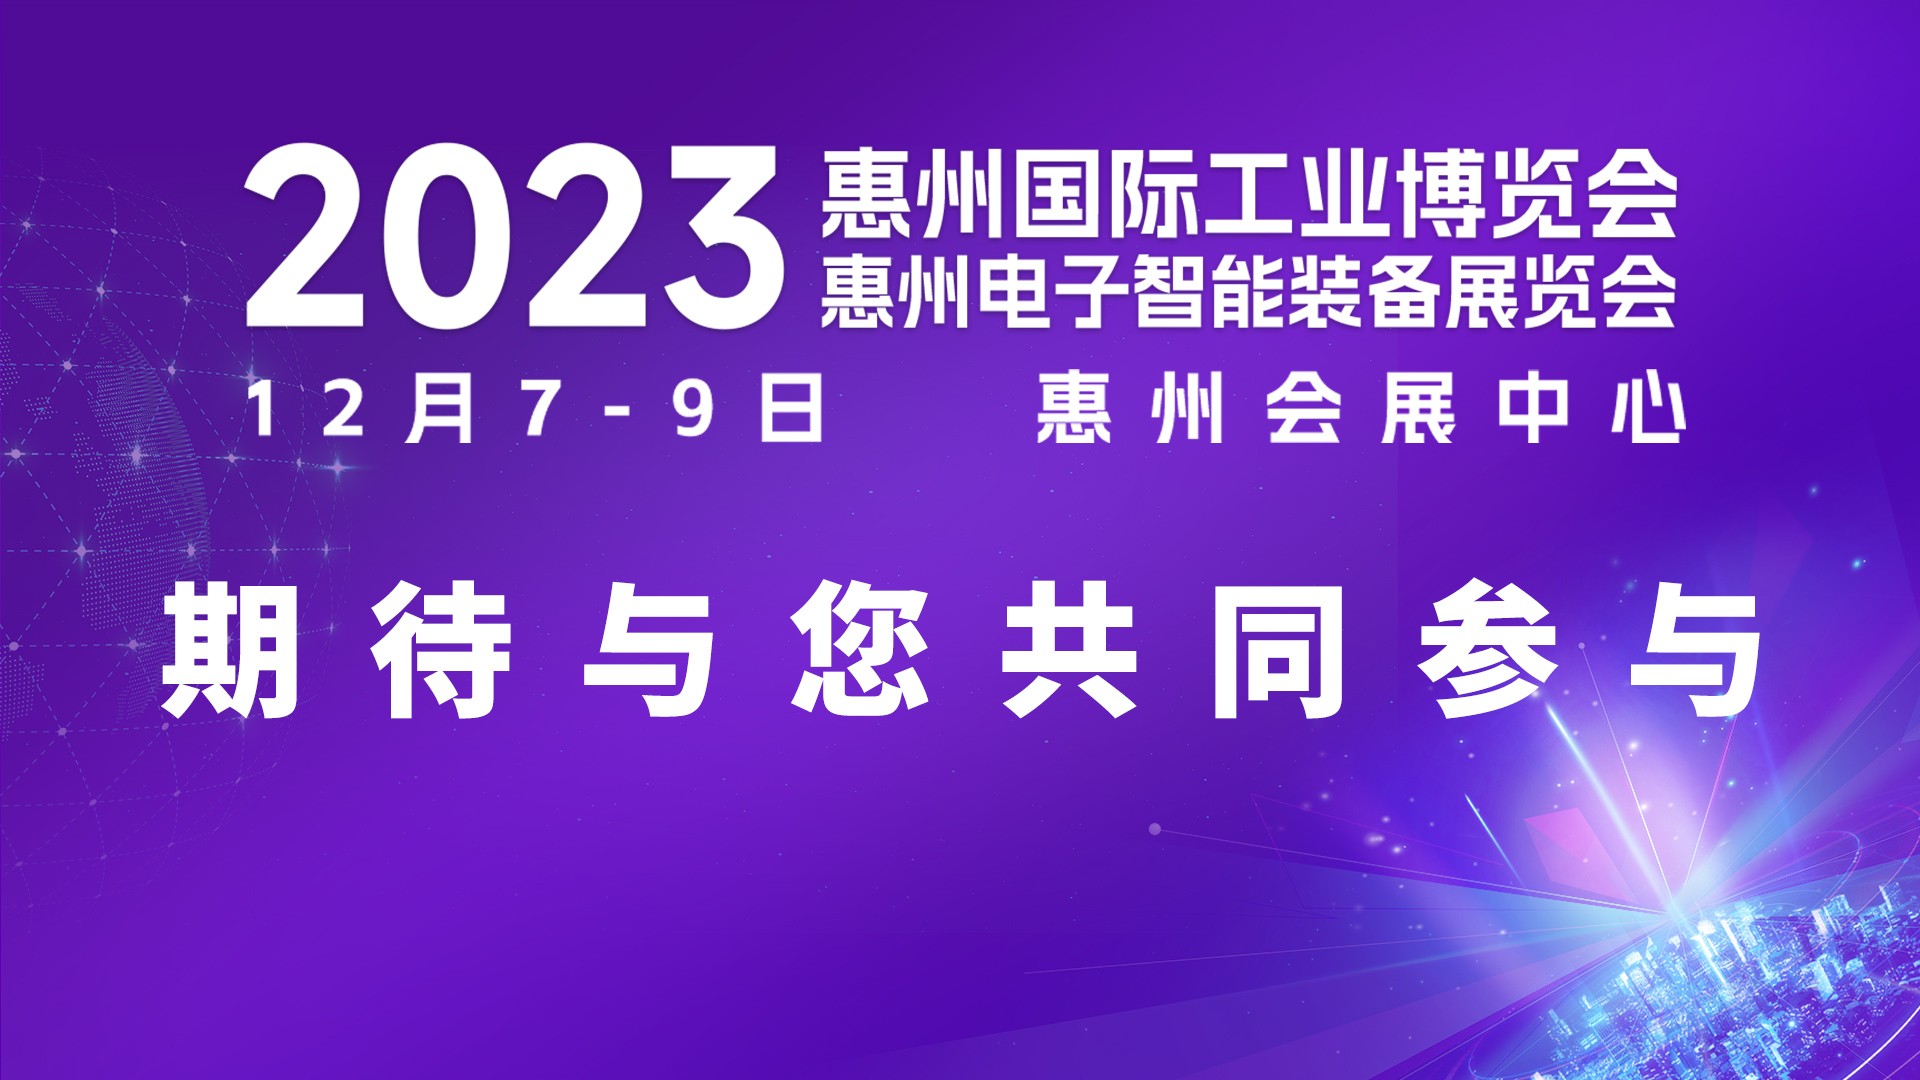 邀请函丨2023惠州国际工业博览会欢迎您